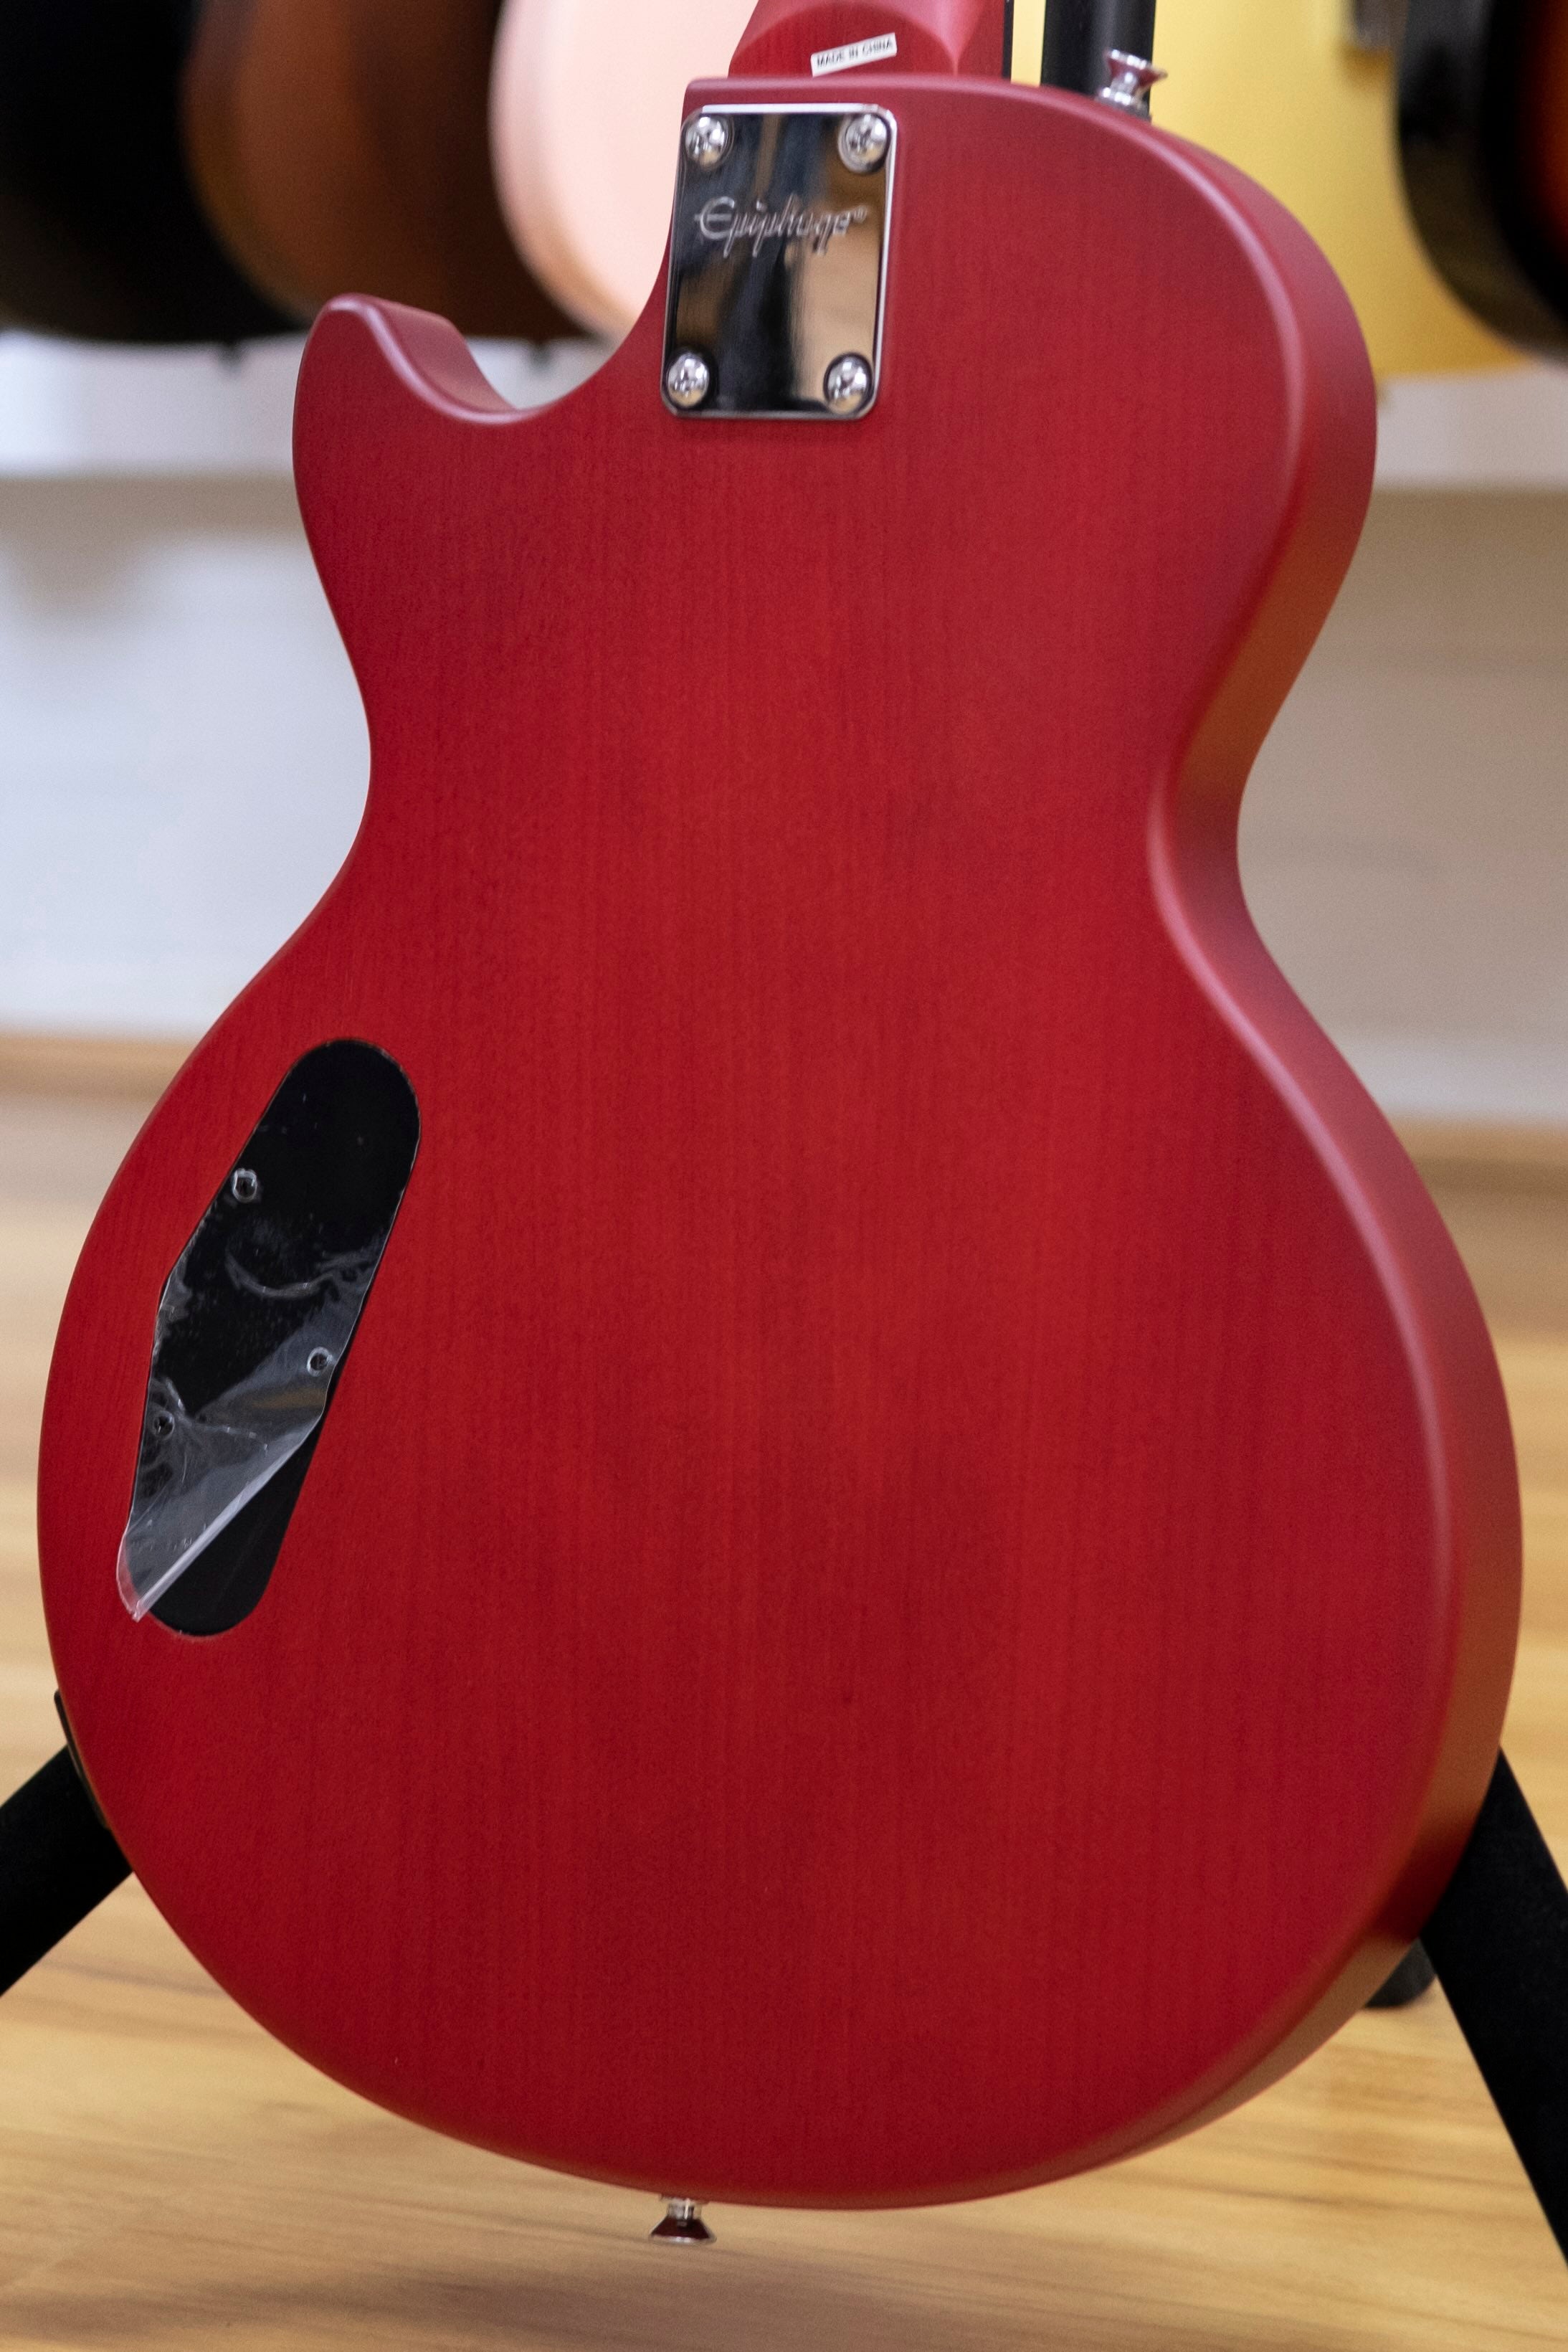 Epiphone Les Paul Special Satin E1 Electric Guitar (Cherry Sunburst)